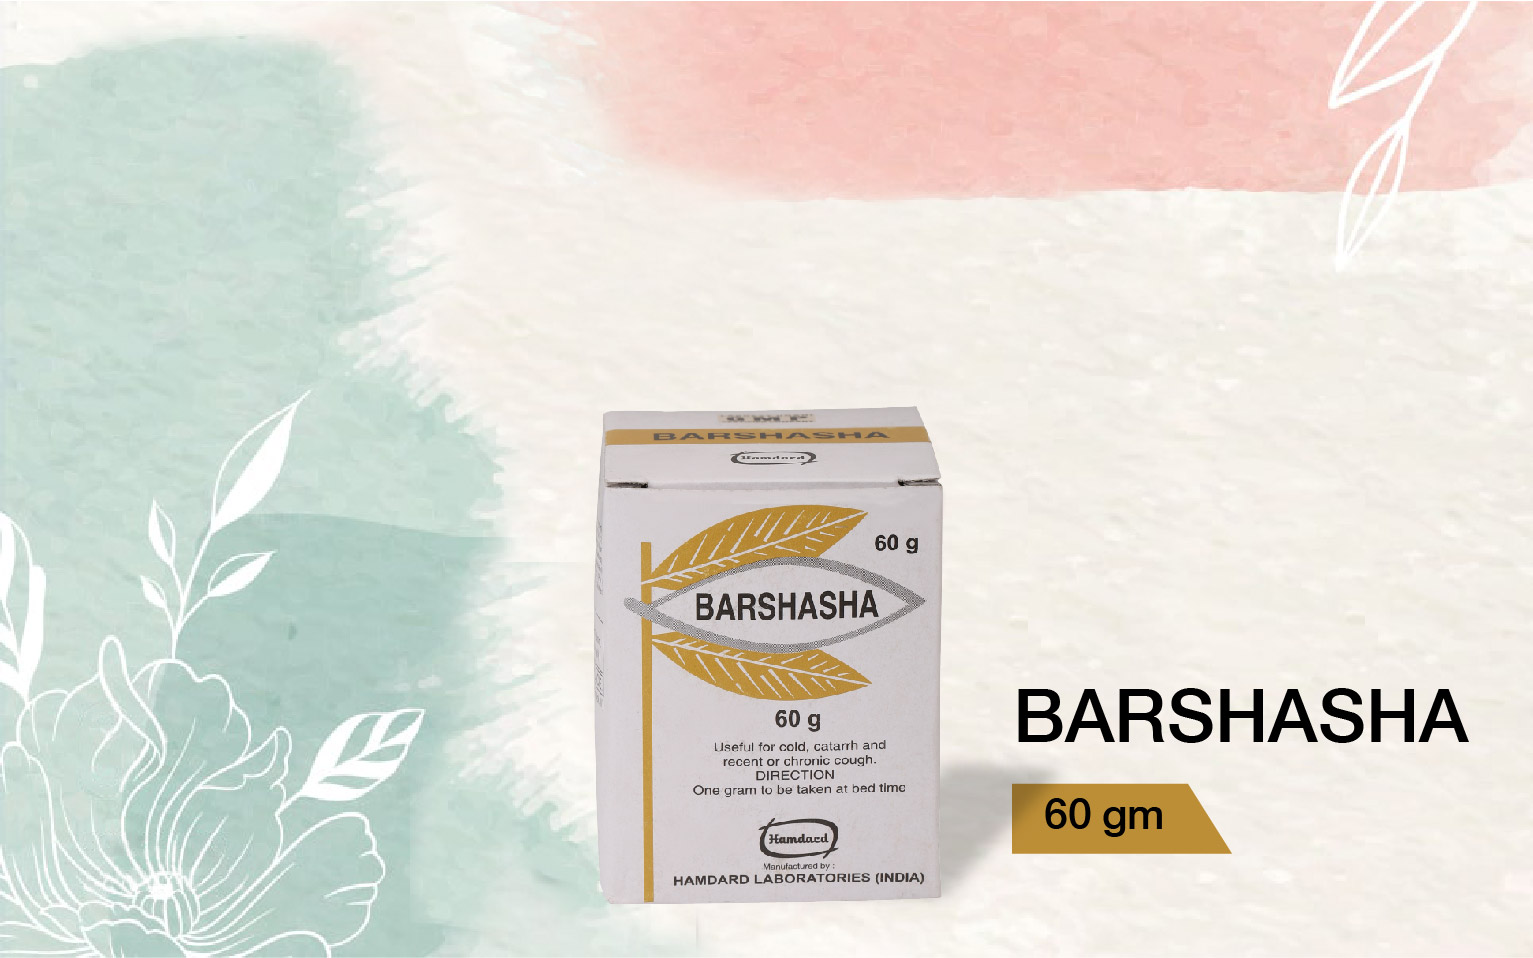 Barshasha